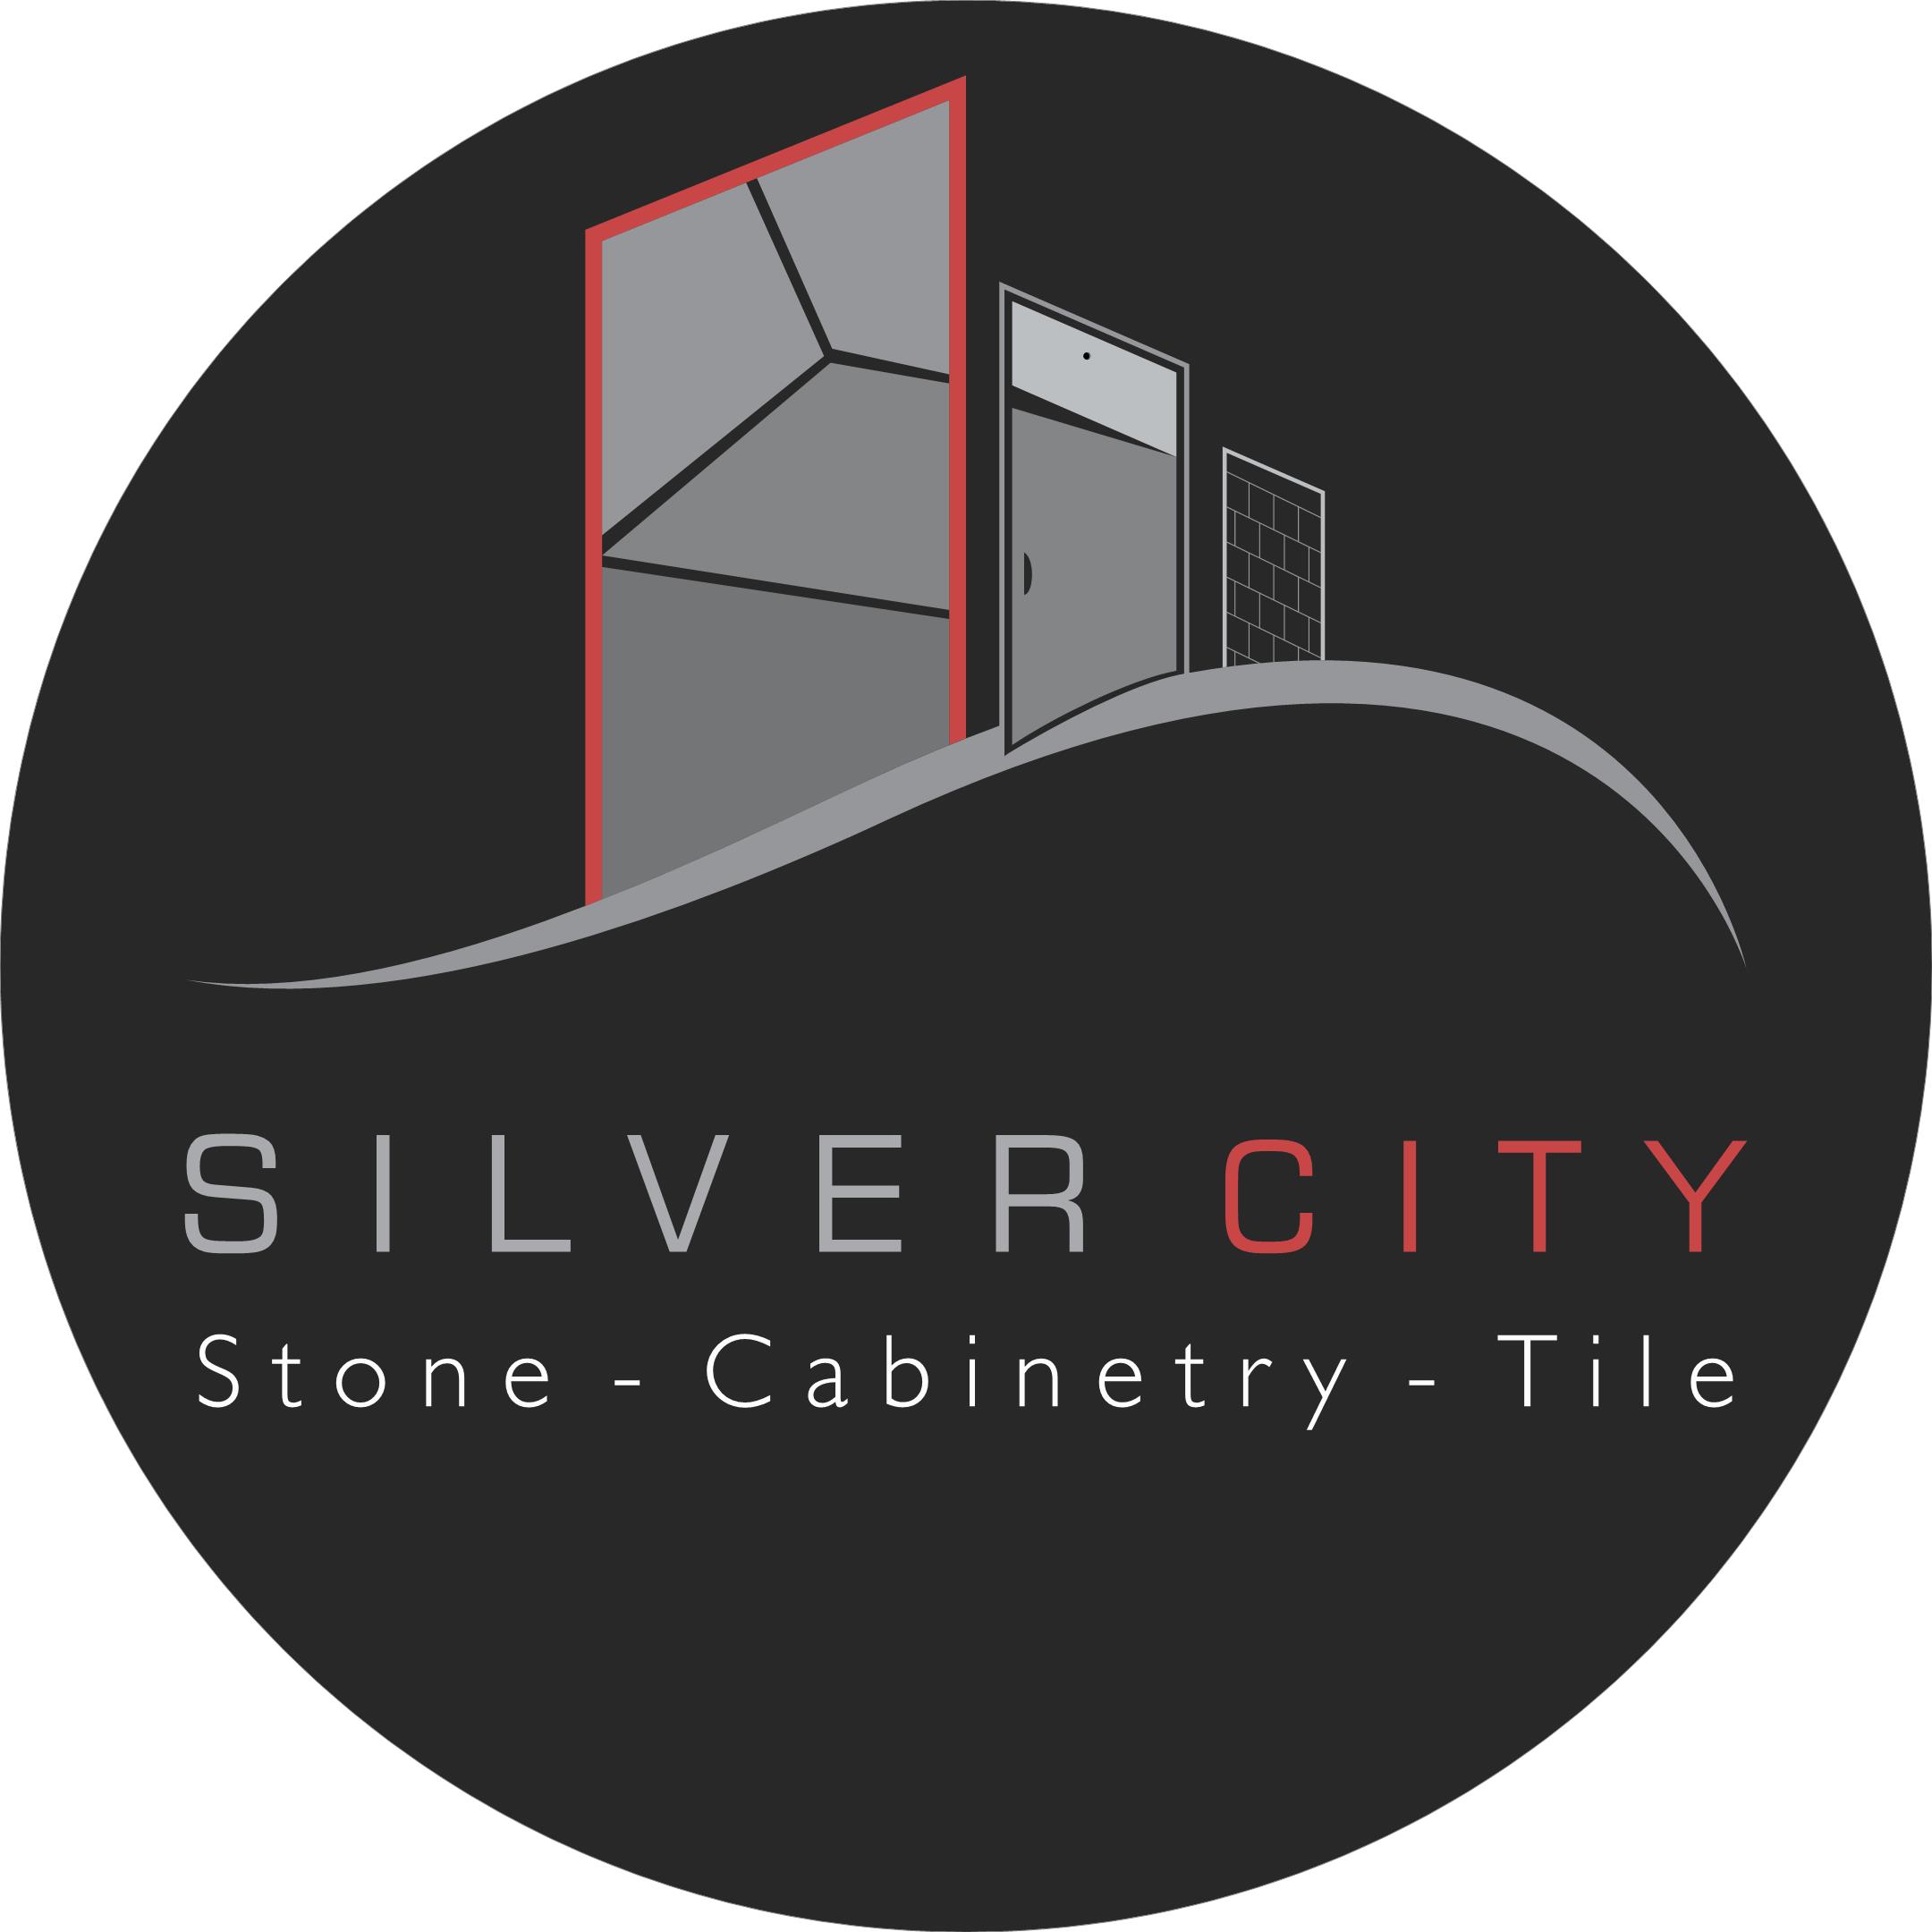 Silver City Stone